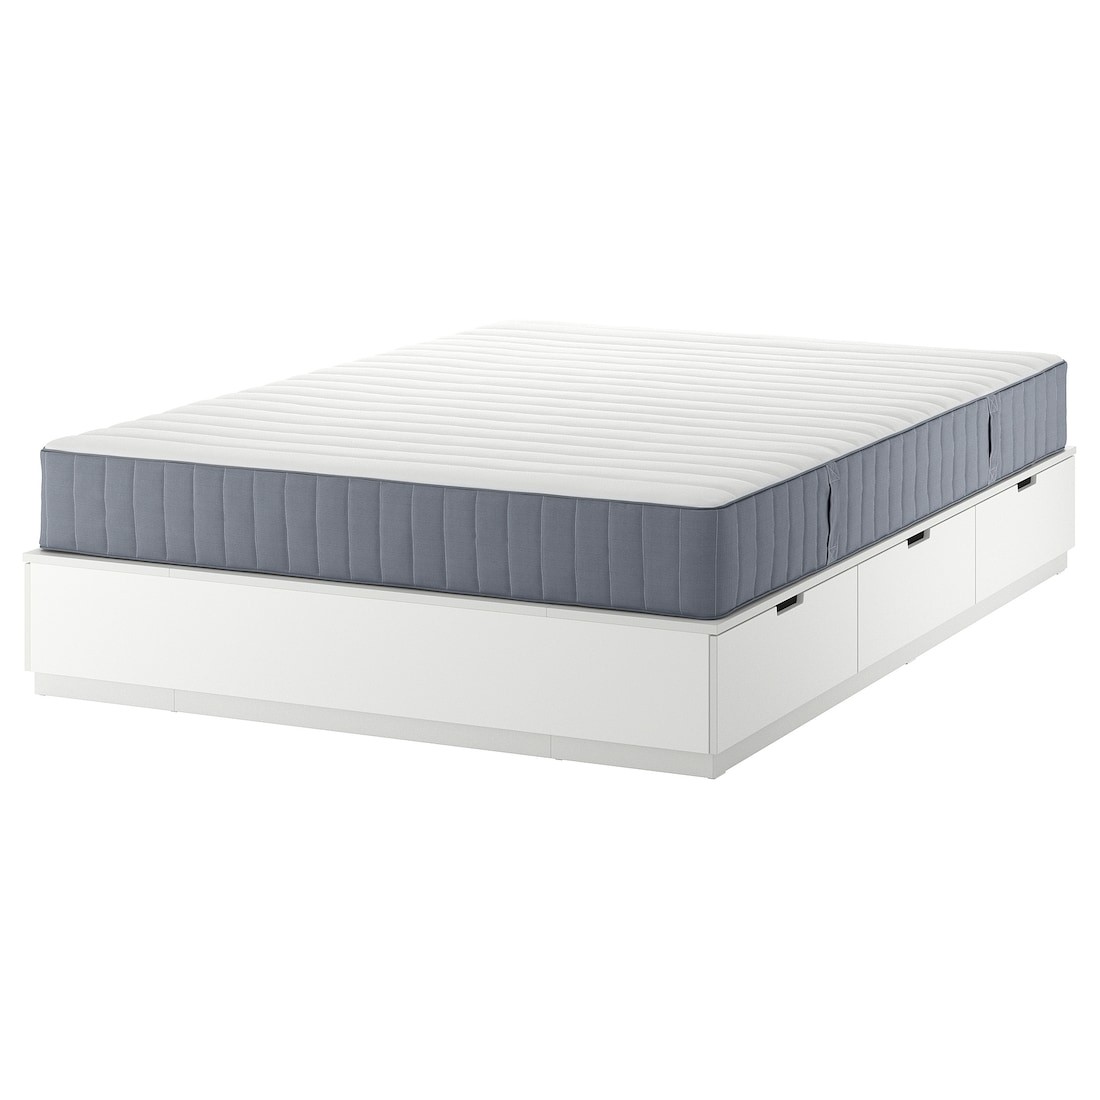 NORDLI Кровать с контейнером и матрасом, белый / Valevåg жесткий, 140x200 см